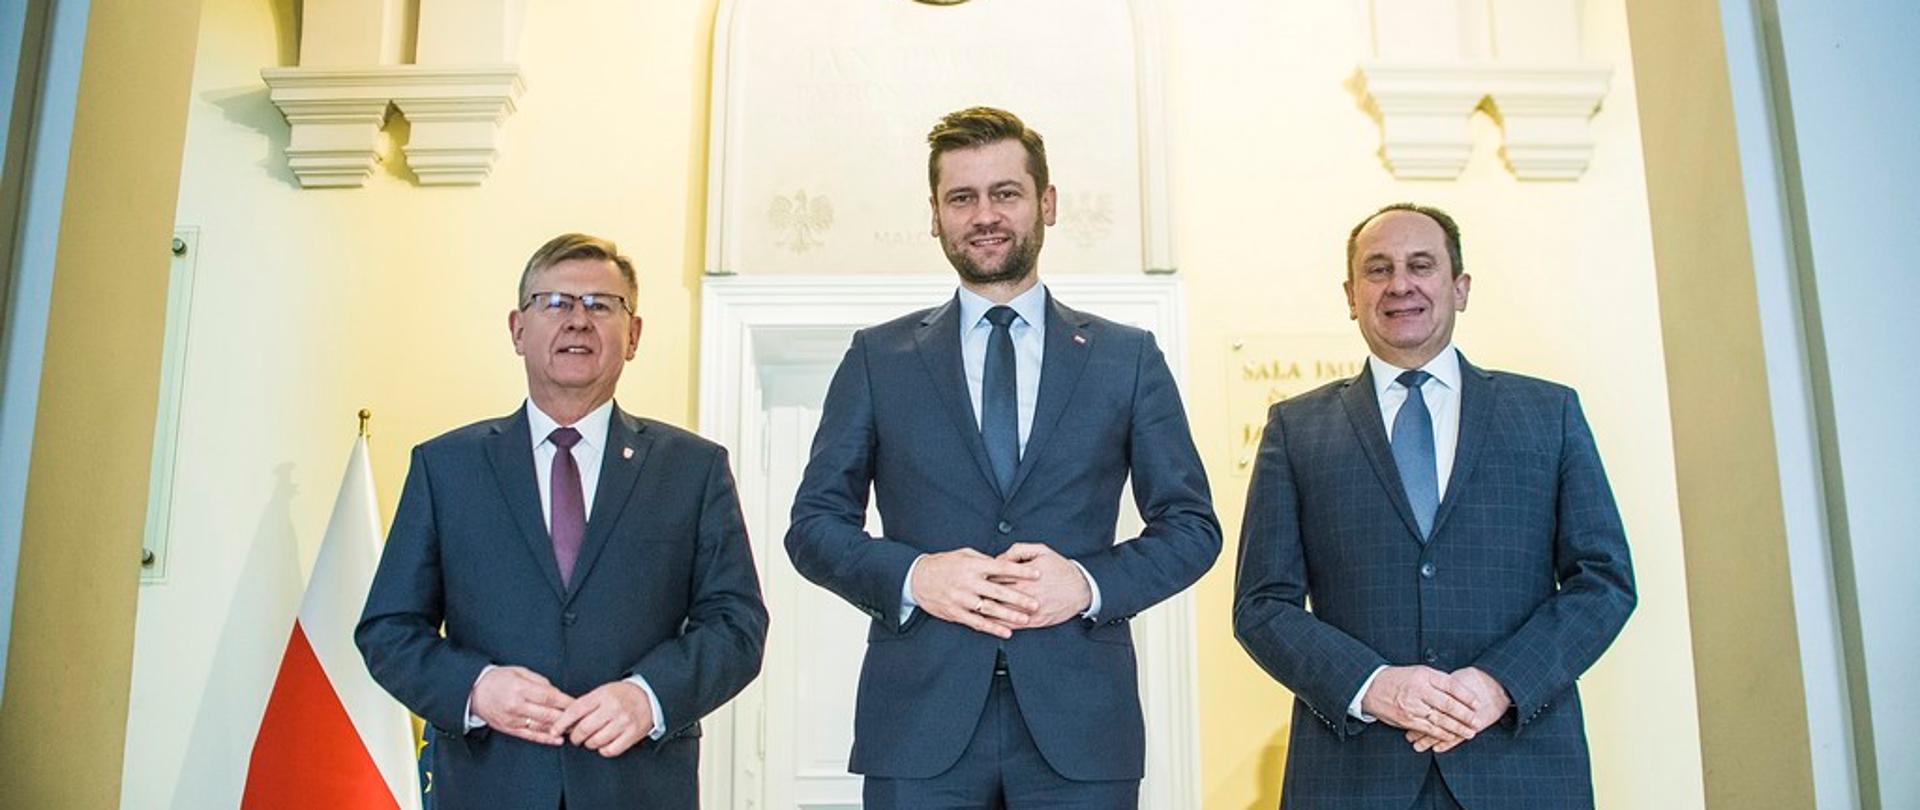 Minister sportu i turystyki Kamil Bortniczuk oraz wiceminister Andrzej Gut-Mostowy wzięli udział w spotkaniu, podczas którego przedstawiony został stan przygotowań do Igrzysk Europejskich 2023.